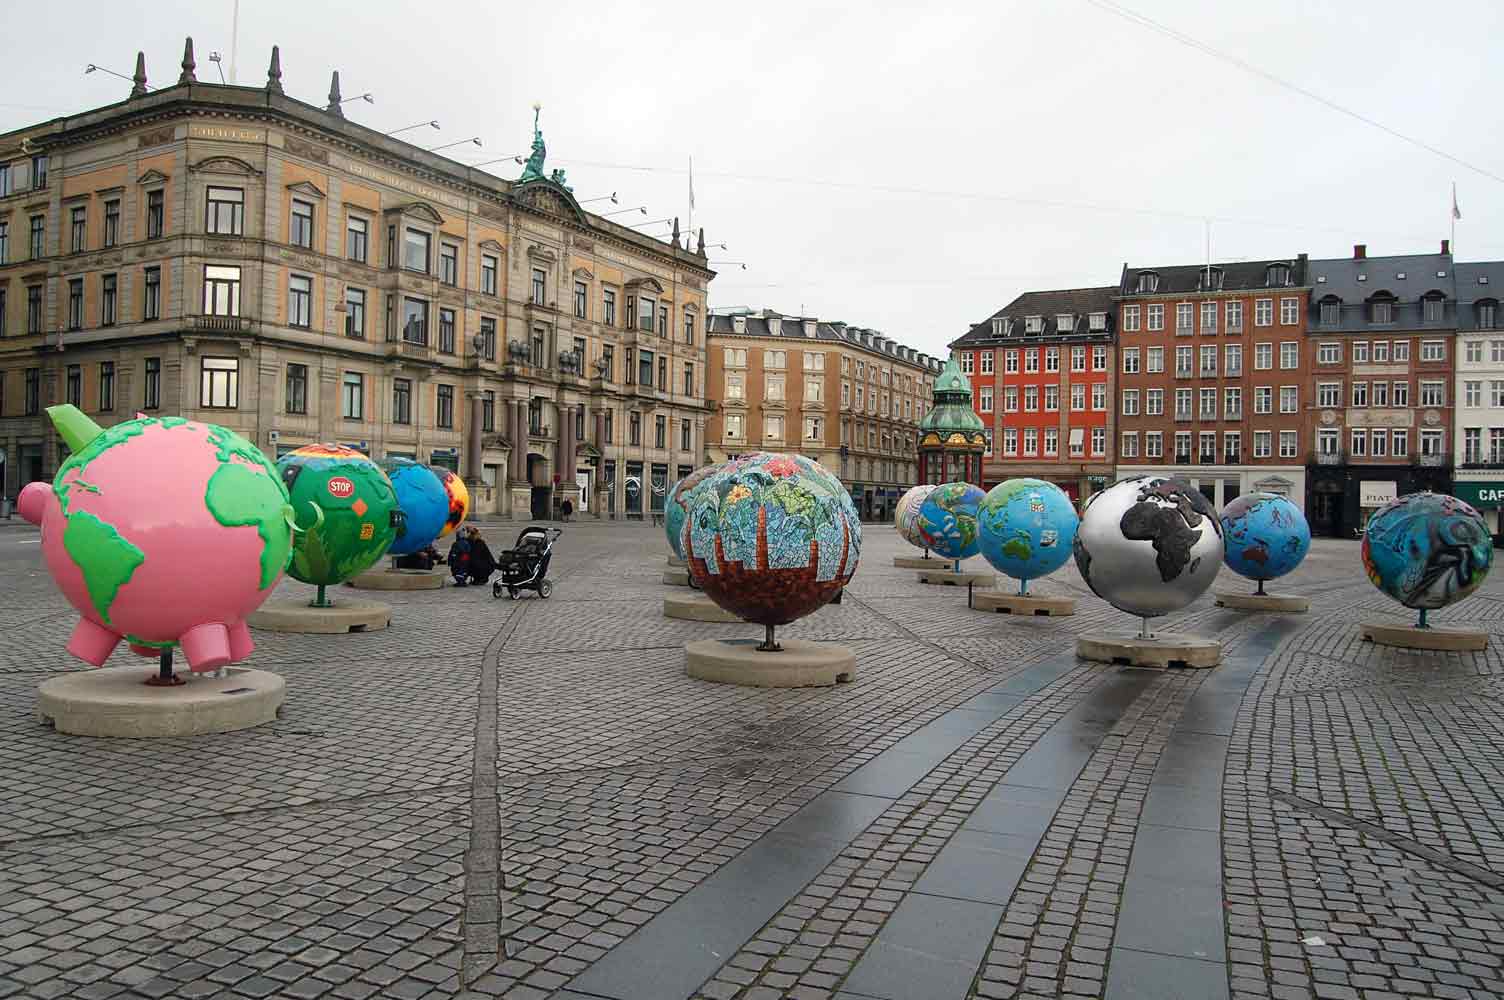 Coscienza ambientalista diffusa in Danimarca. Mappamondi colorati che denunciano il riscaldamento globale in piazza a Copenhagen (photo Pino Bruno)